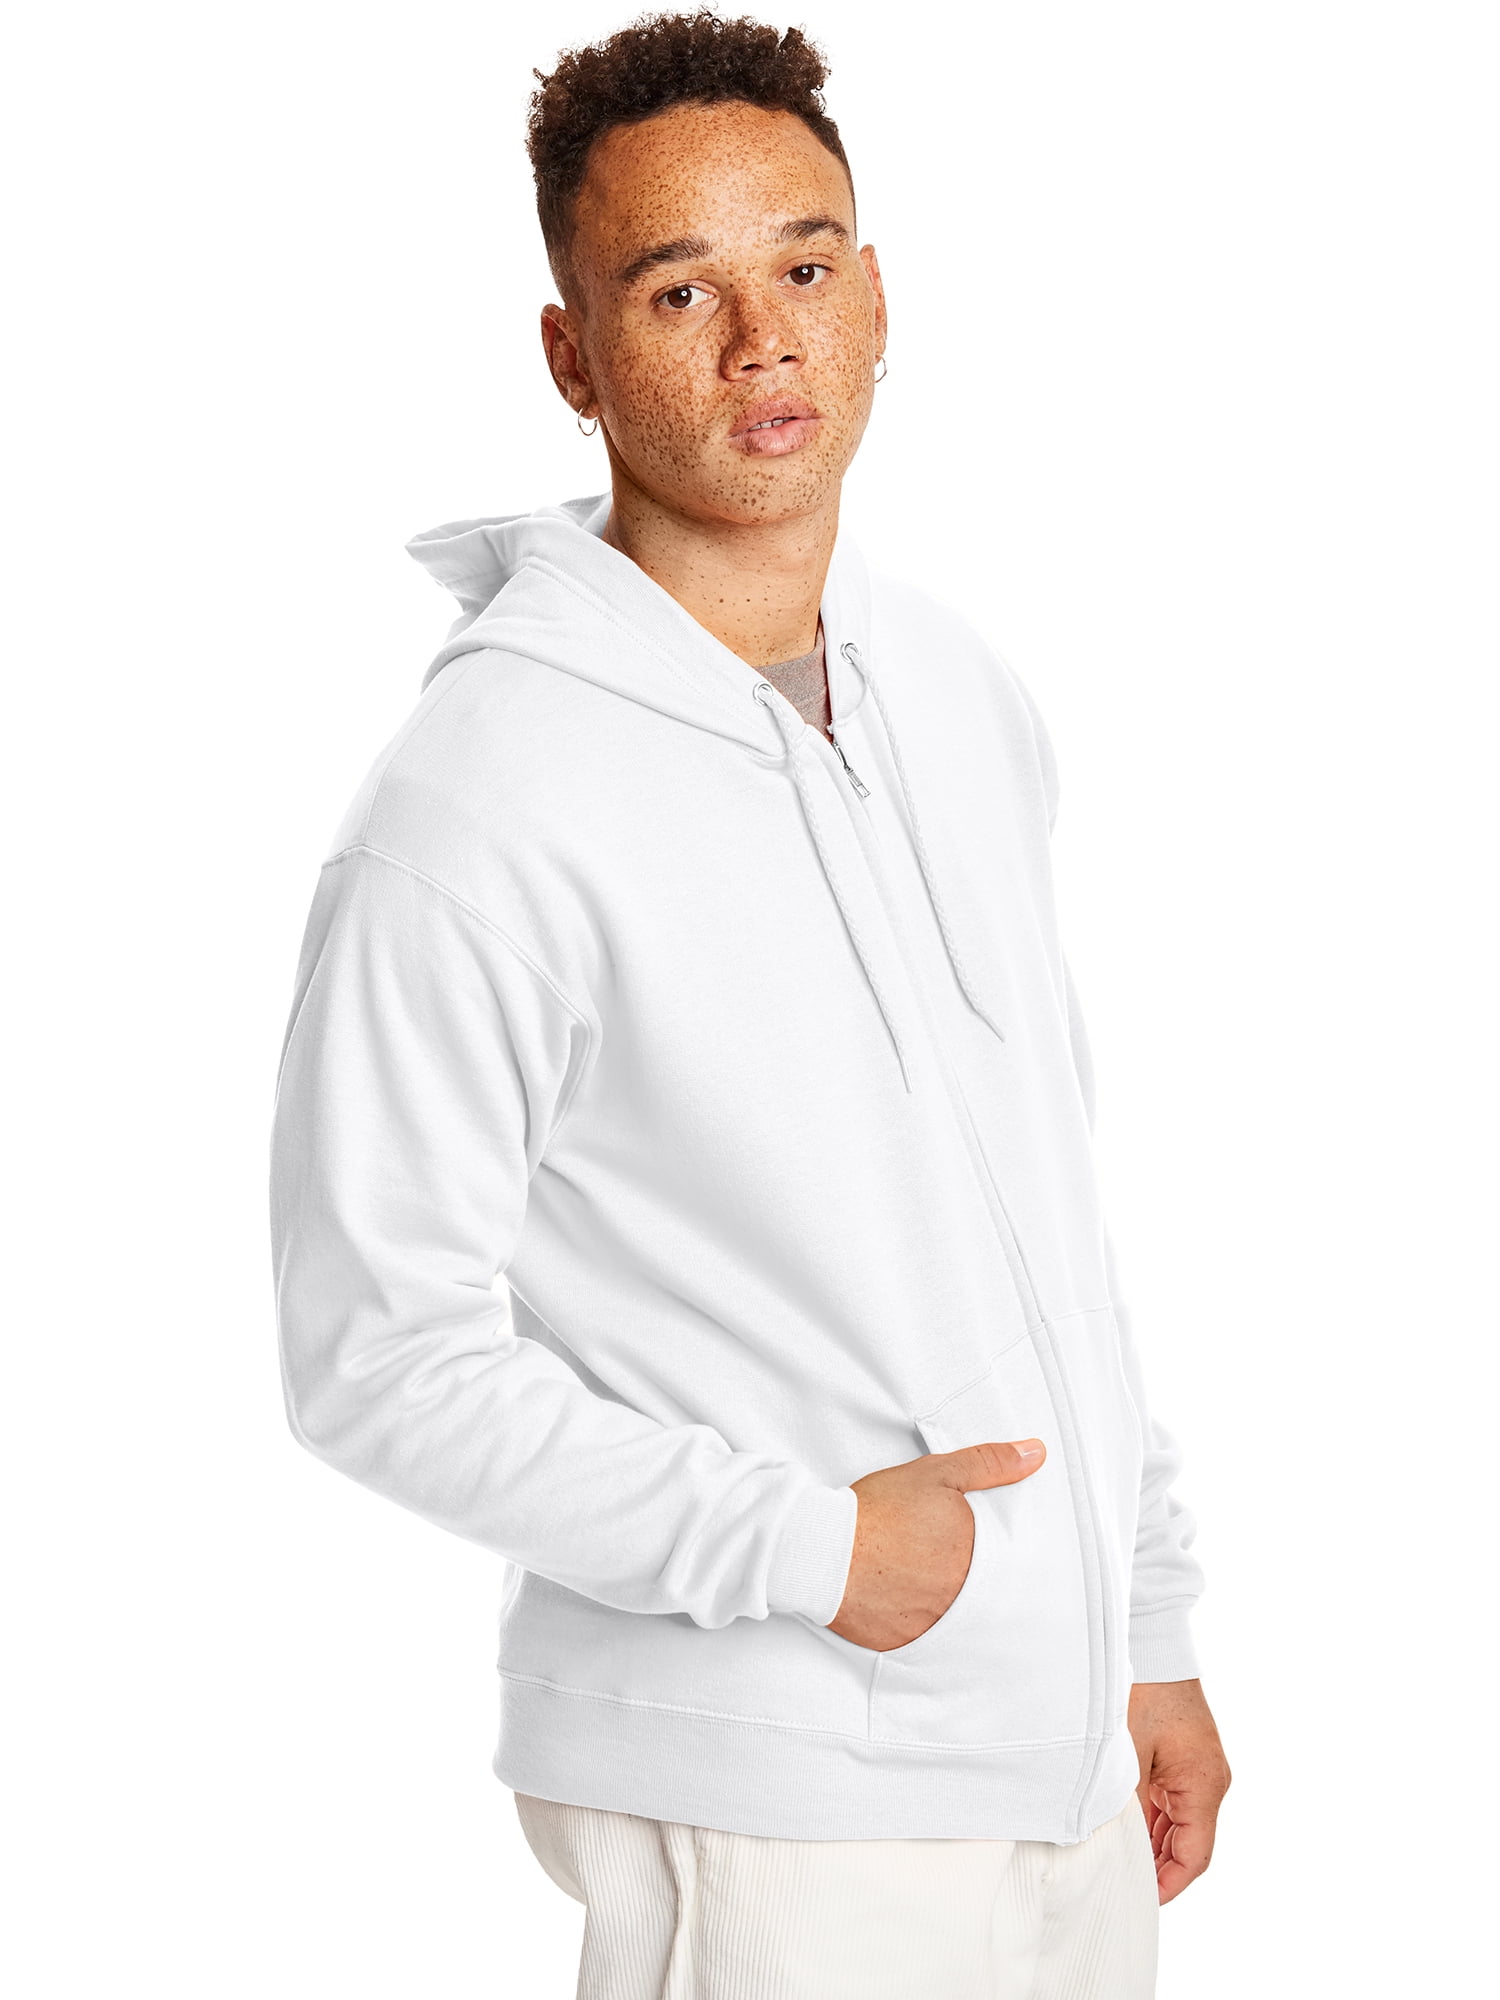 Hanes Mens ComfortBlend EcoSmart Pullover Hoodie Sweatshirt, 3XL